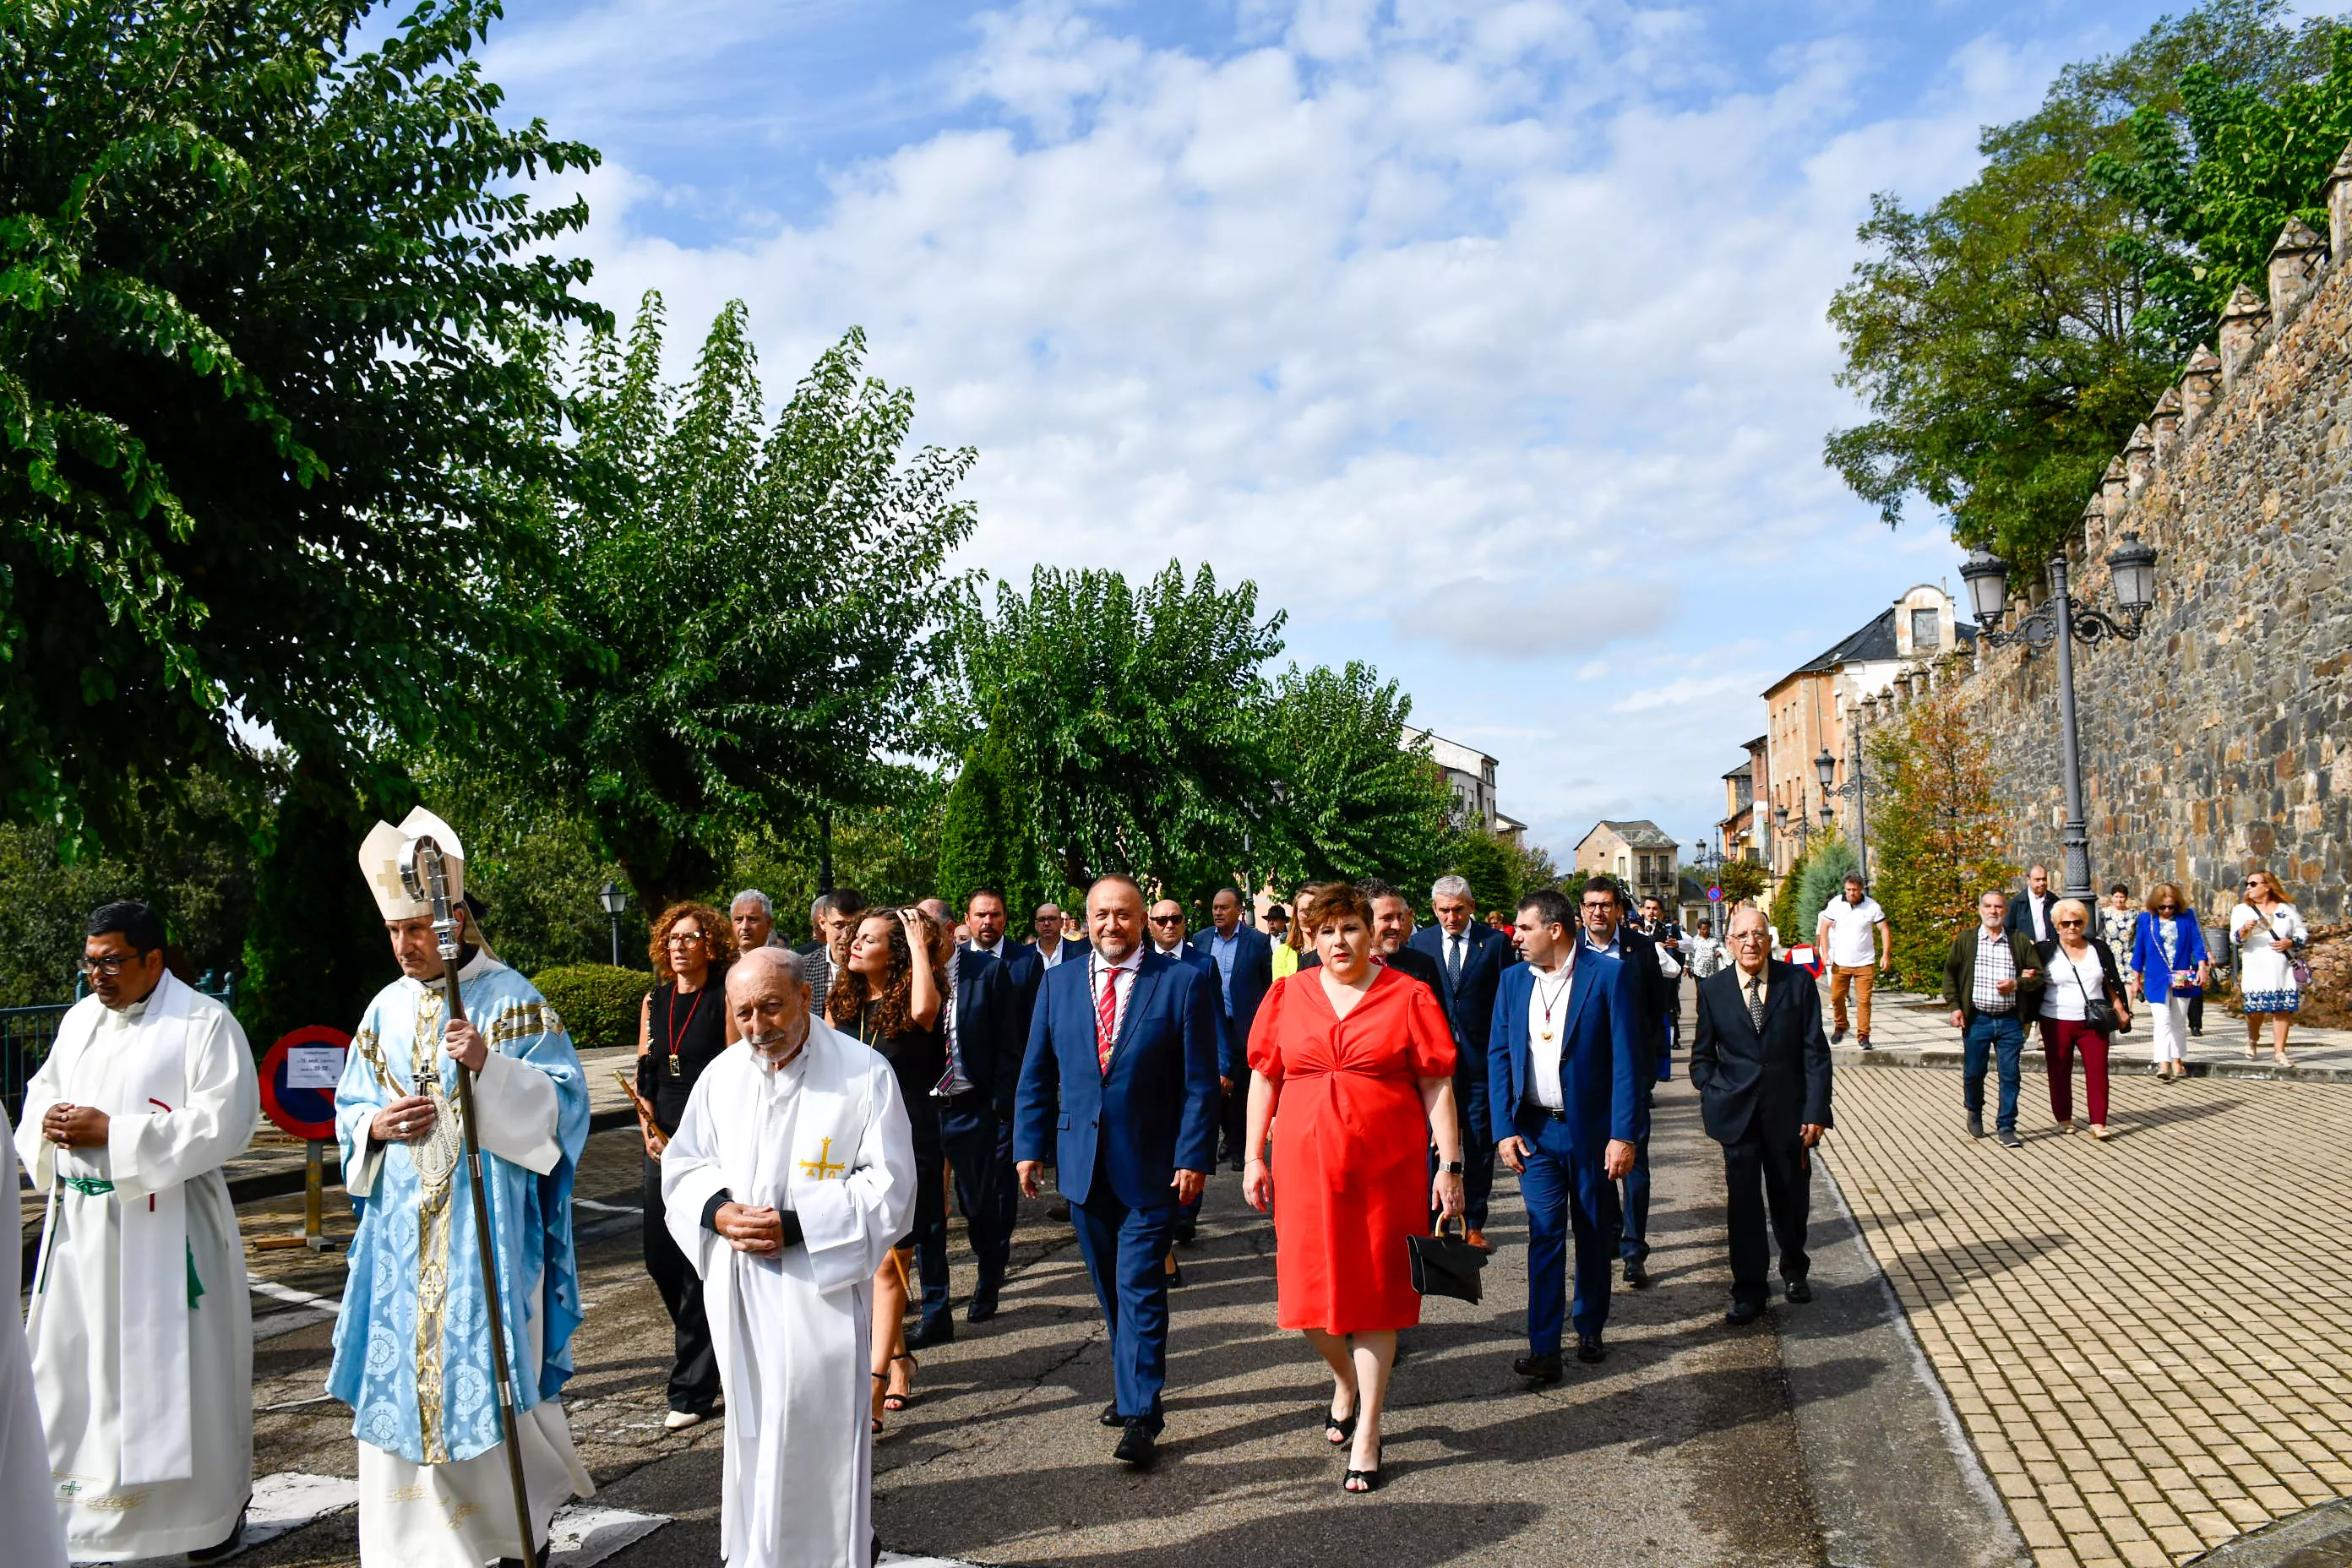  Tradicional procesión y comitiva de autoridades en el día del Cristín de Bembibre  (56)